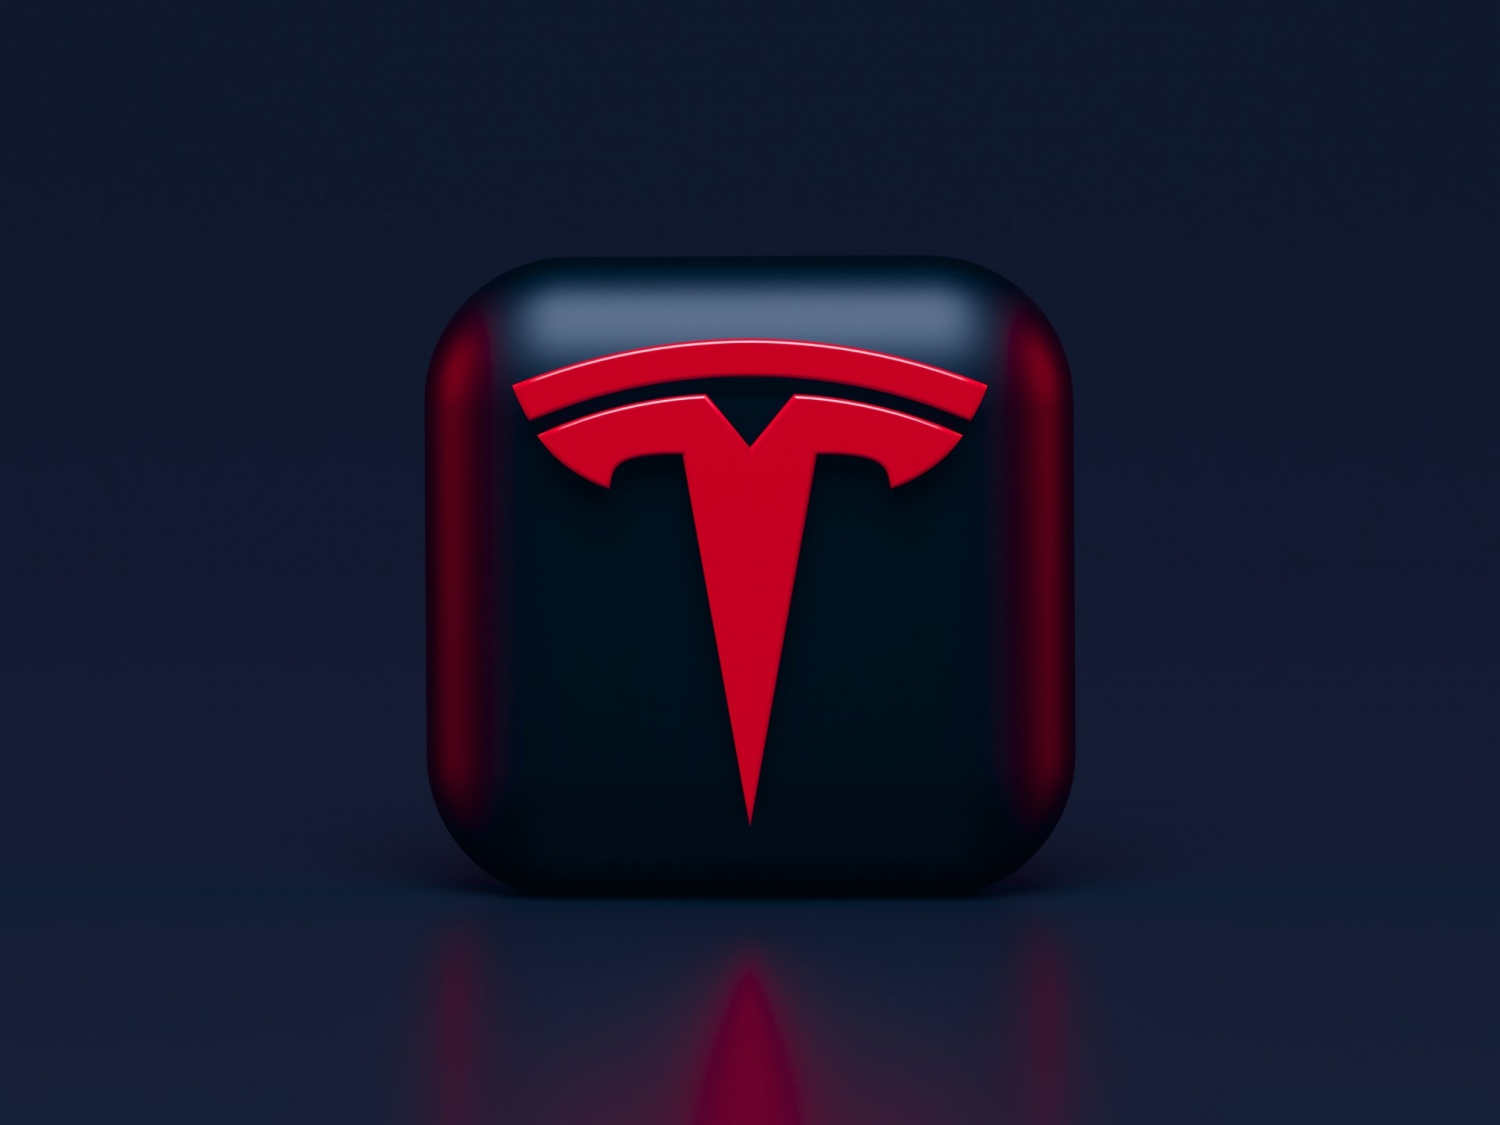 Elon Musk's Tesla Solar Panel-Powerwall Bundle Update: New Powerwall+ Specs, Design Leaked!